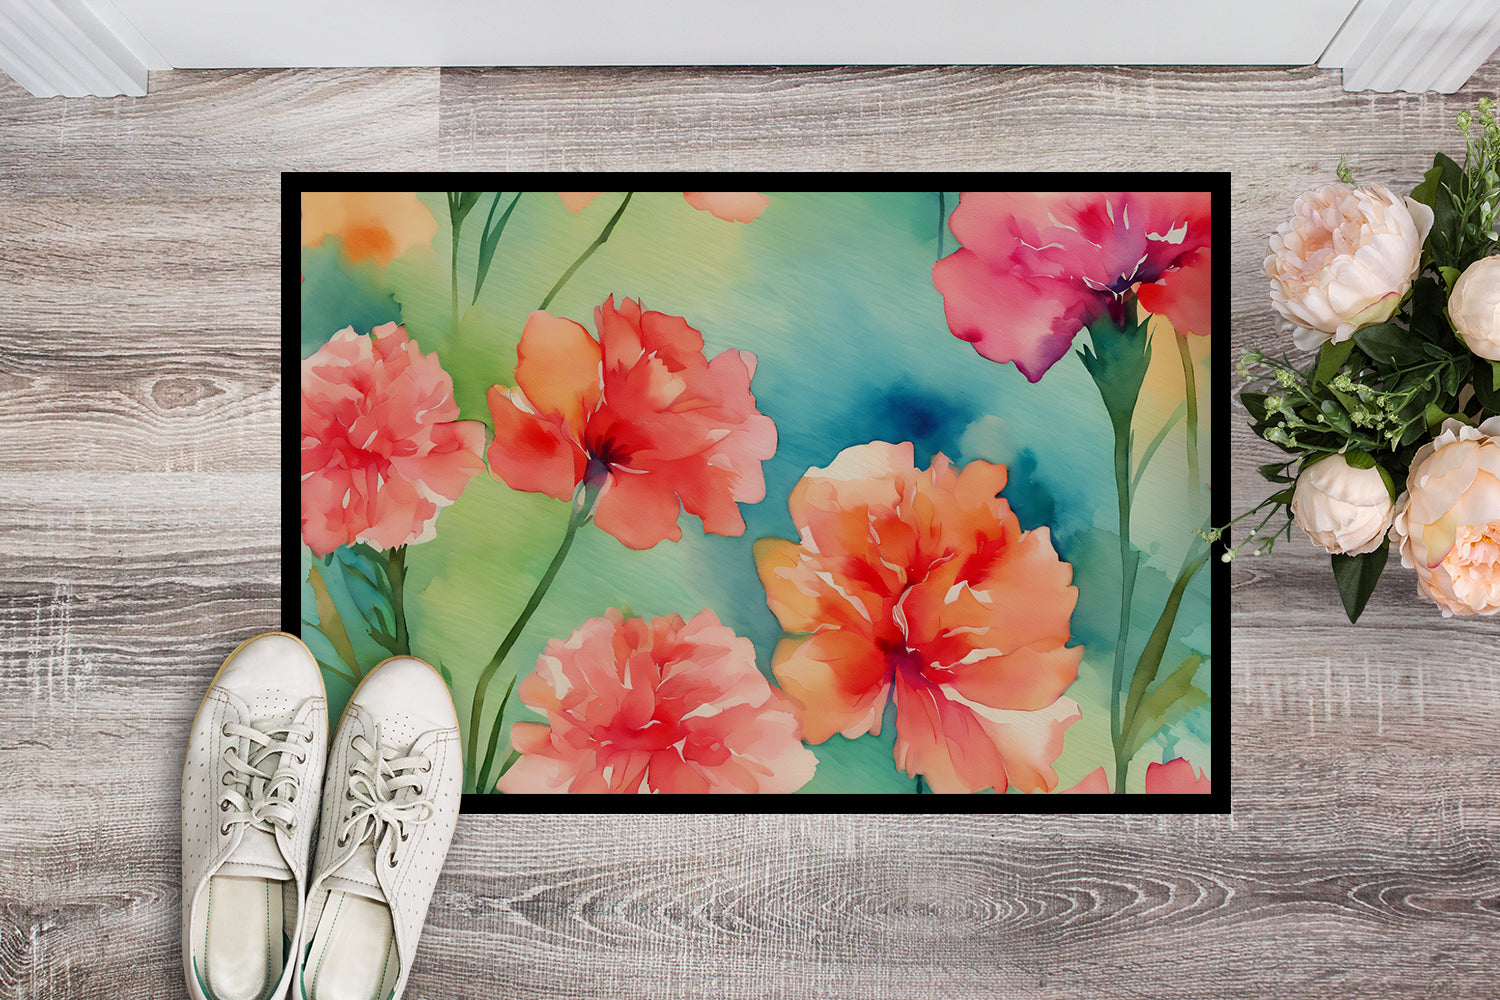 Buy this Carnations in Watercolor Doormat 18x27